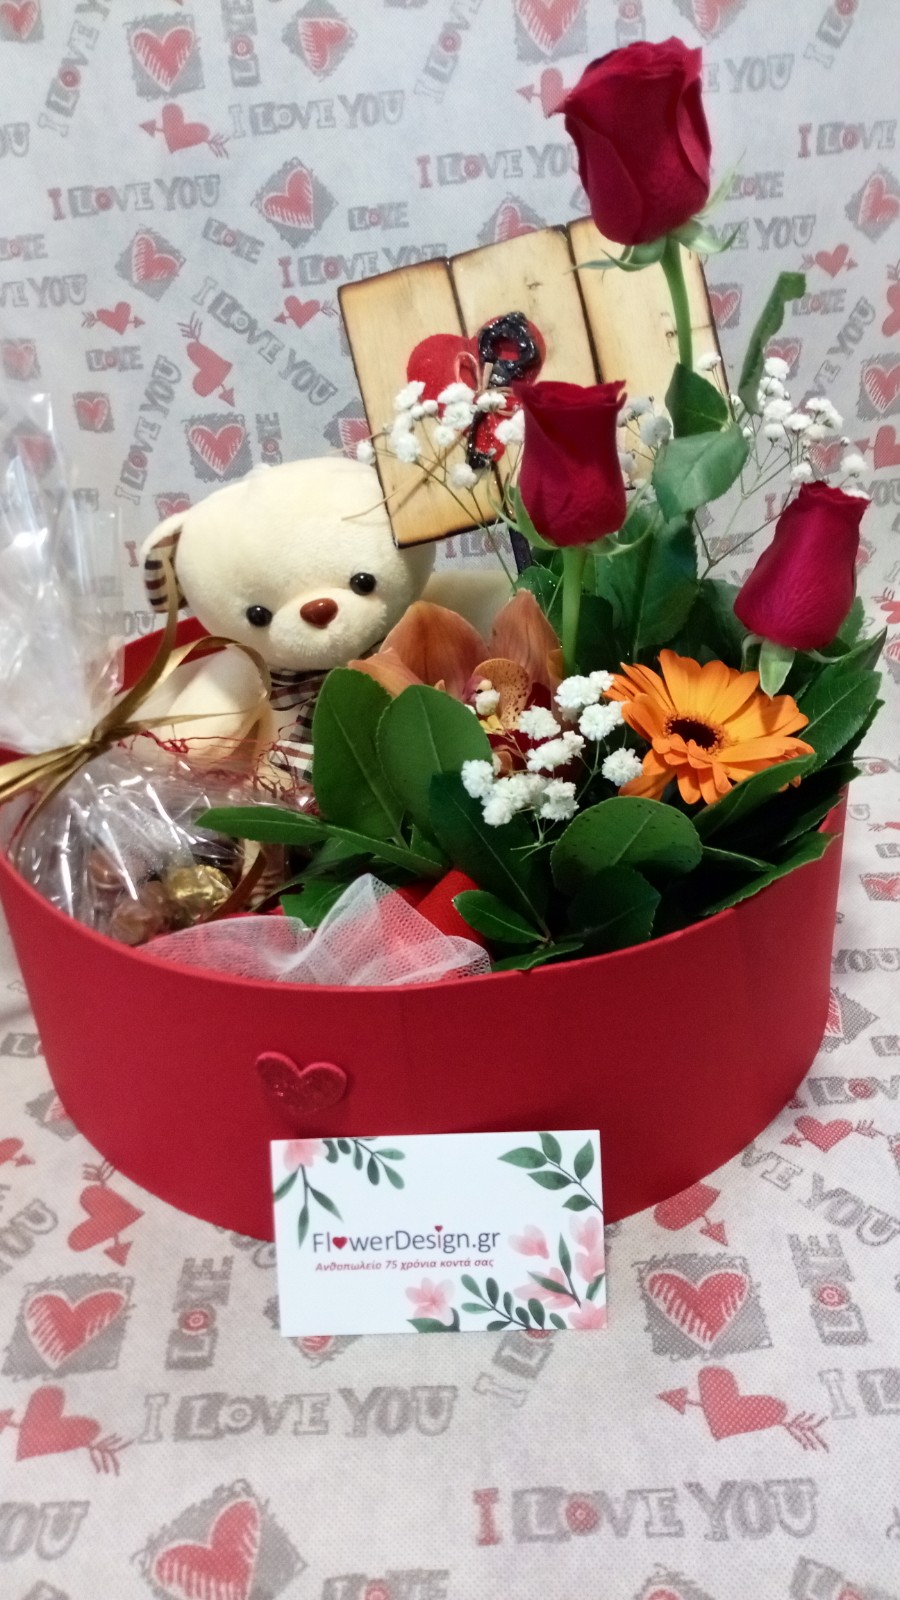 Κουτί με σοκοφρέτες , αρκουδάκι και λουλούδια